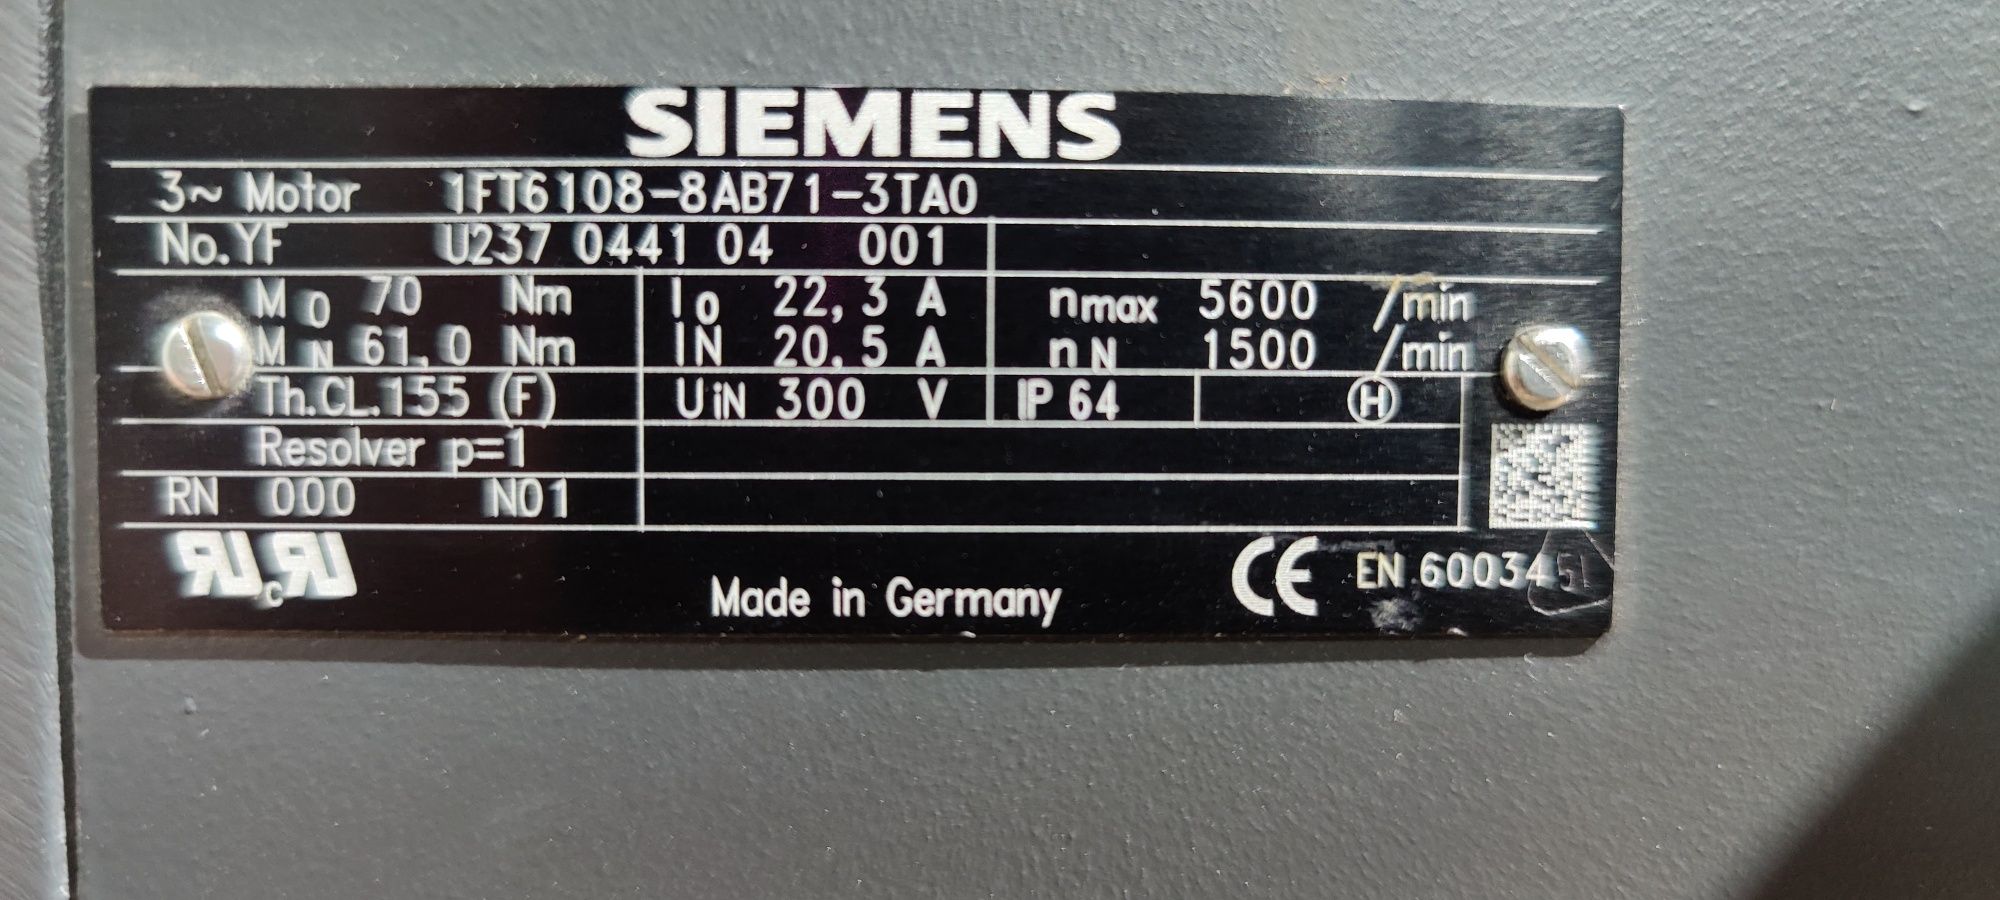 Servomotor Siemens, 7kW, 1500rpm